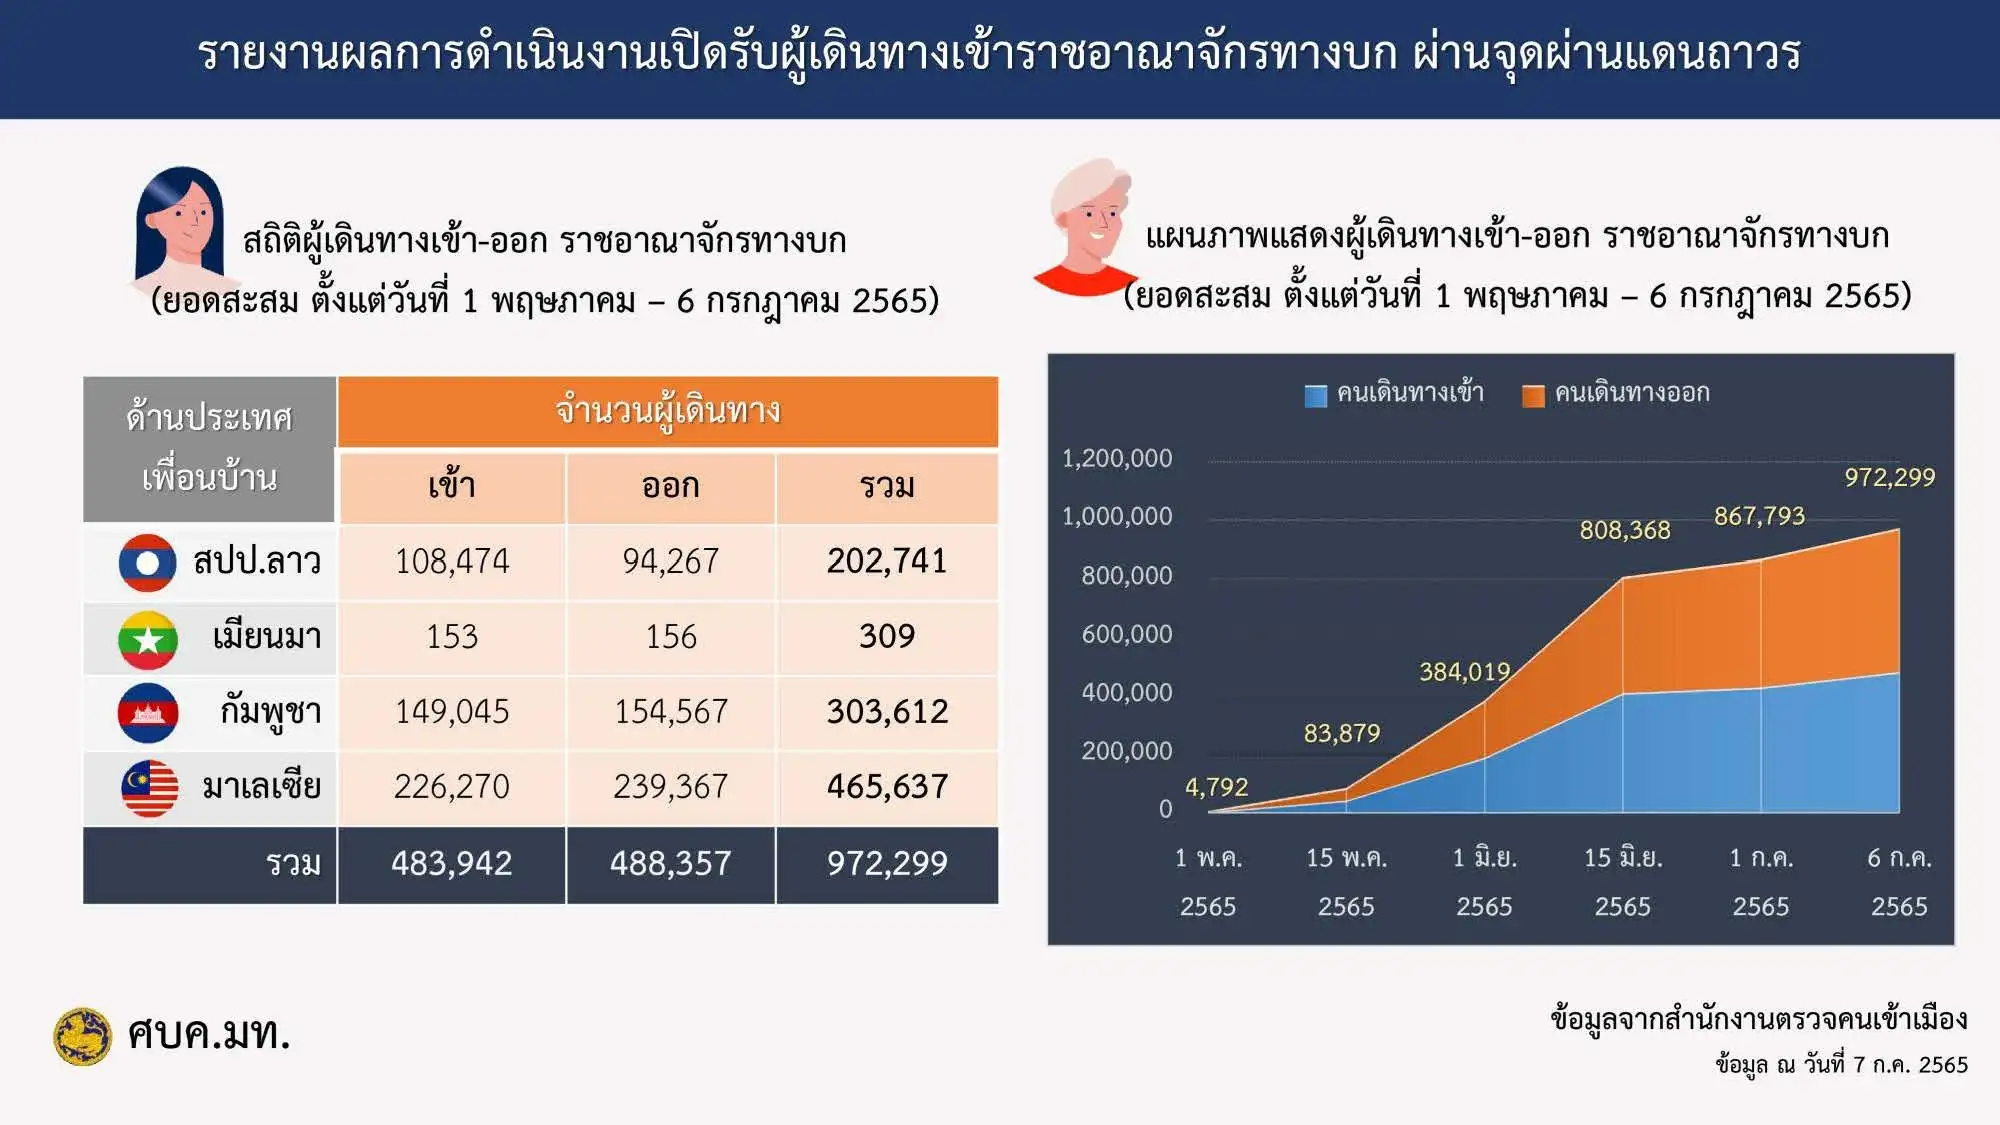 นักท่องเที่ยวต่างชาติเข้าไทยครึ่งปี 65 กว่า 2.2 ล้านคน ทำเงิน 1.25 แสนล้านบาท HealthServ